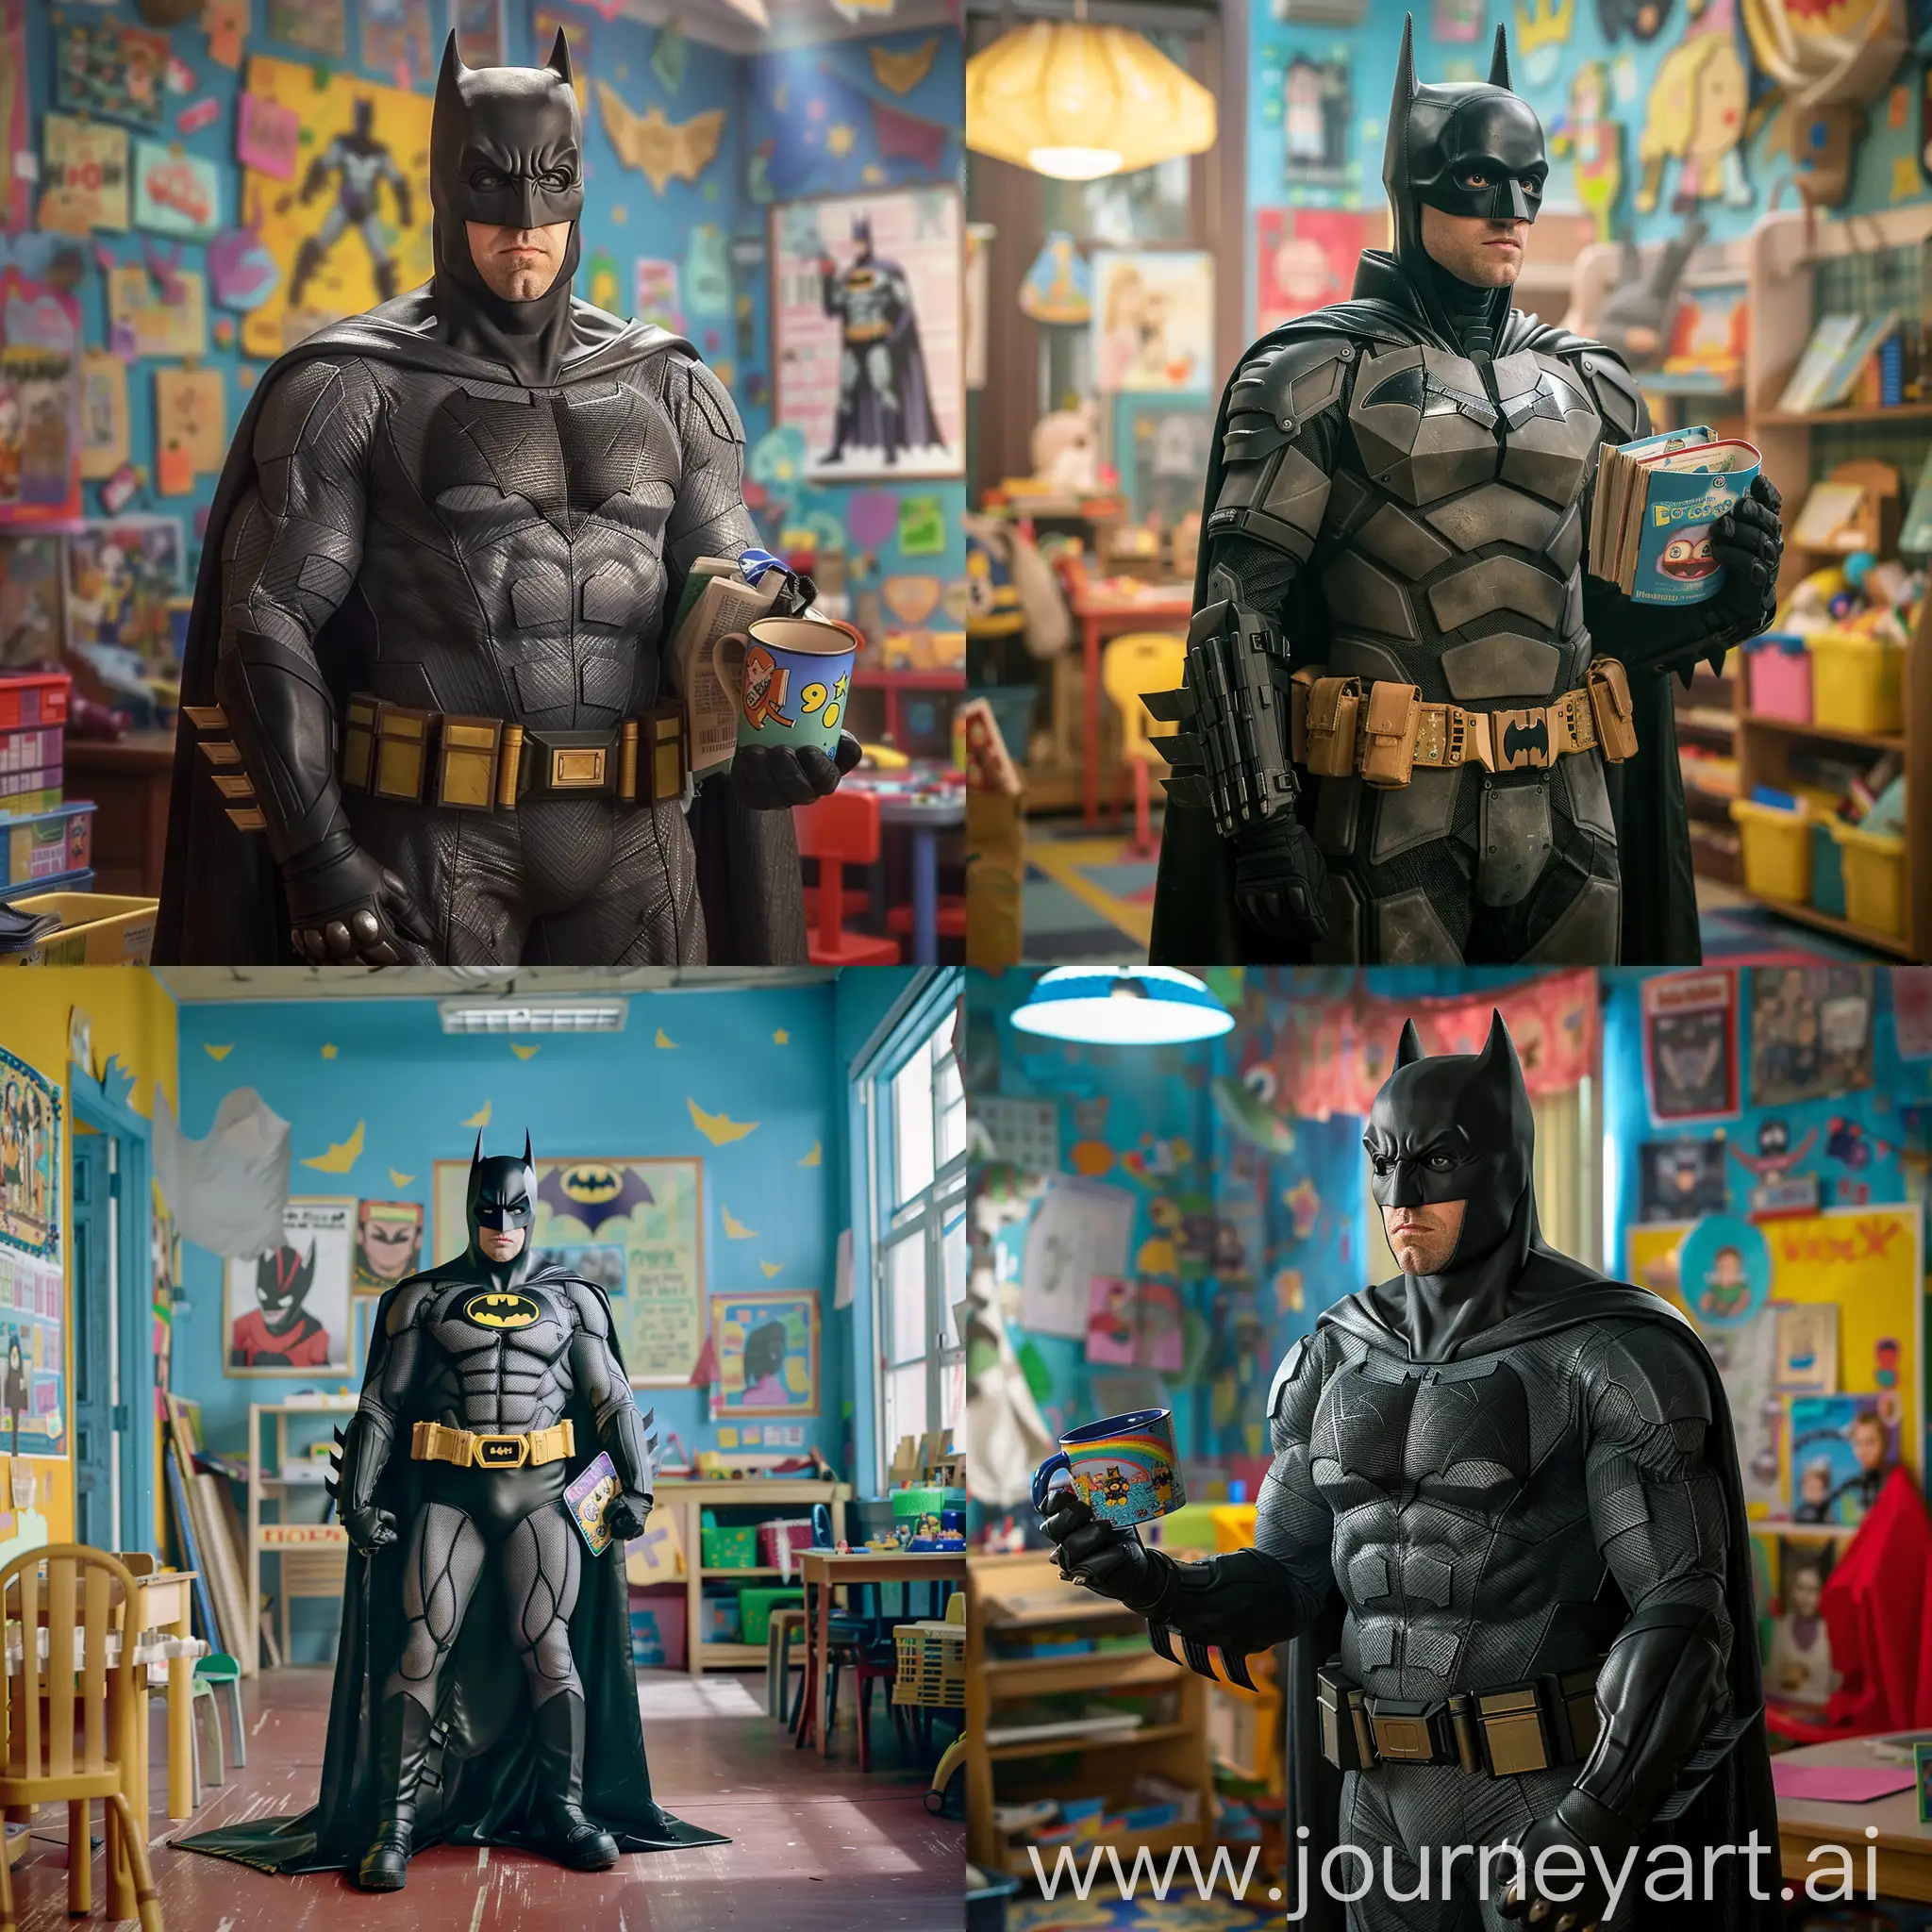 Batman-in-Kindergarten-Classroom-with-Childrens-Book-and-School-Bag